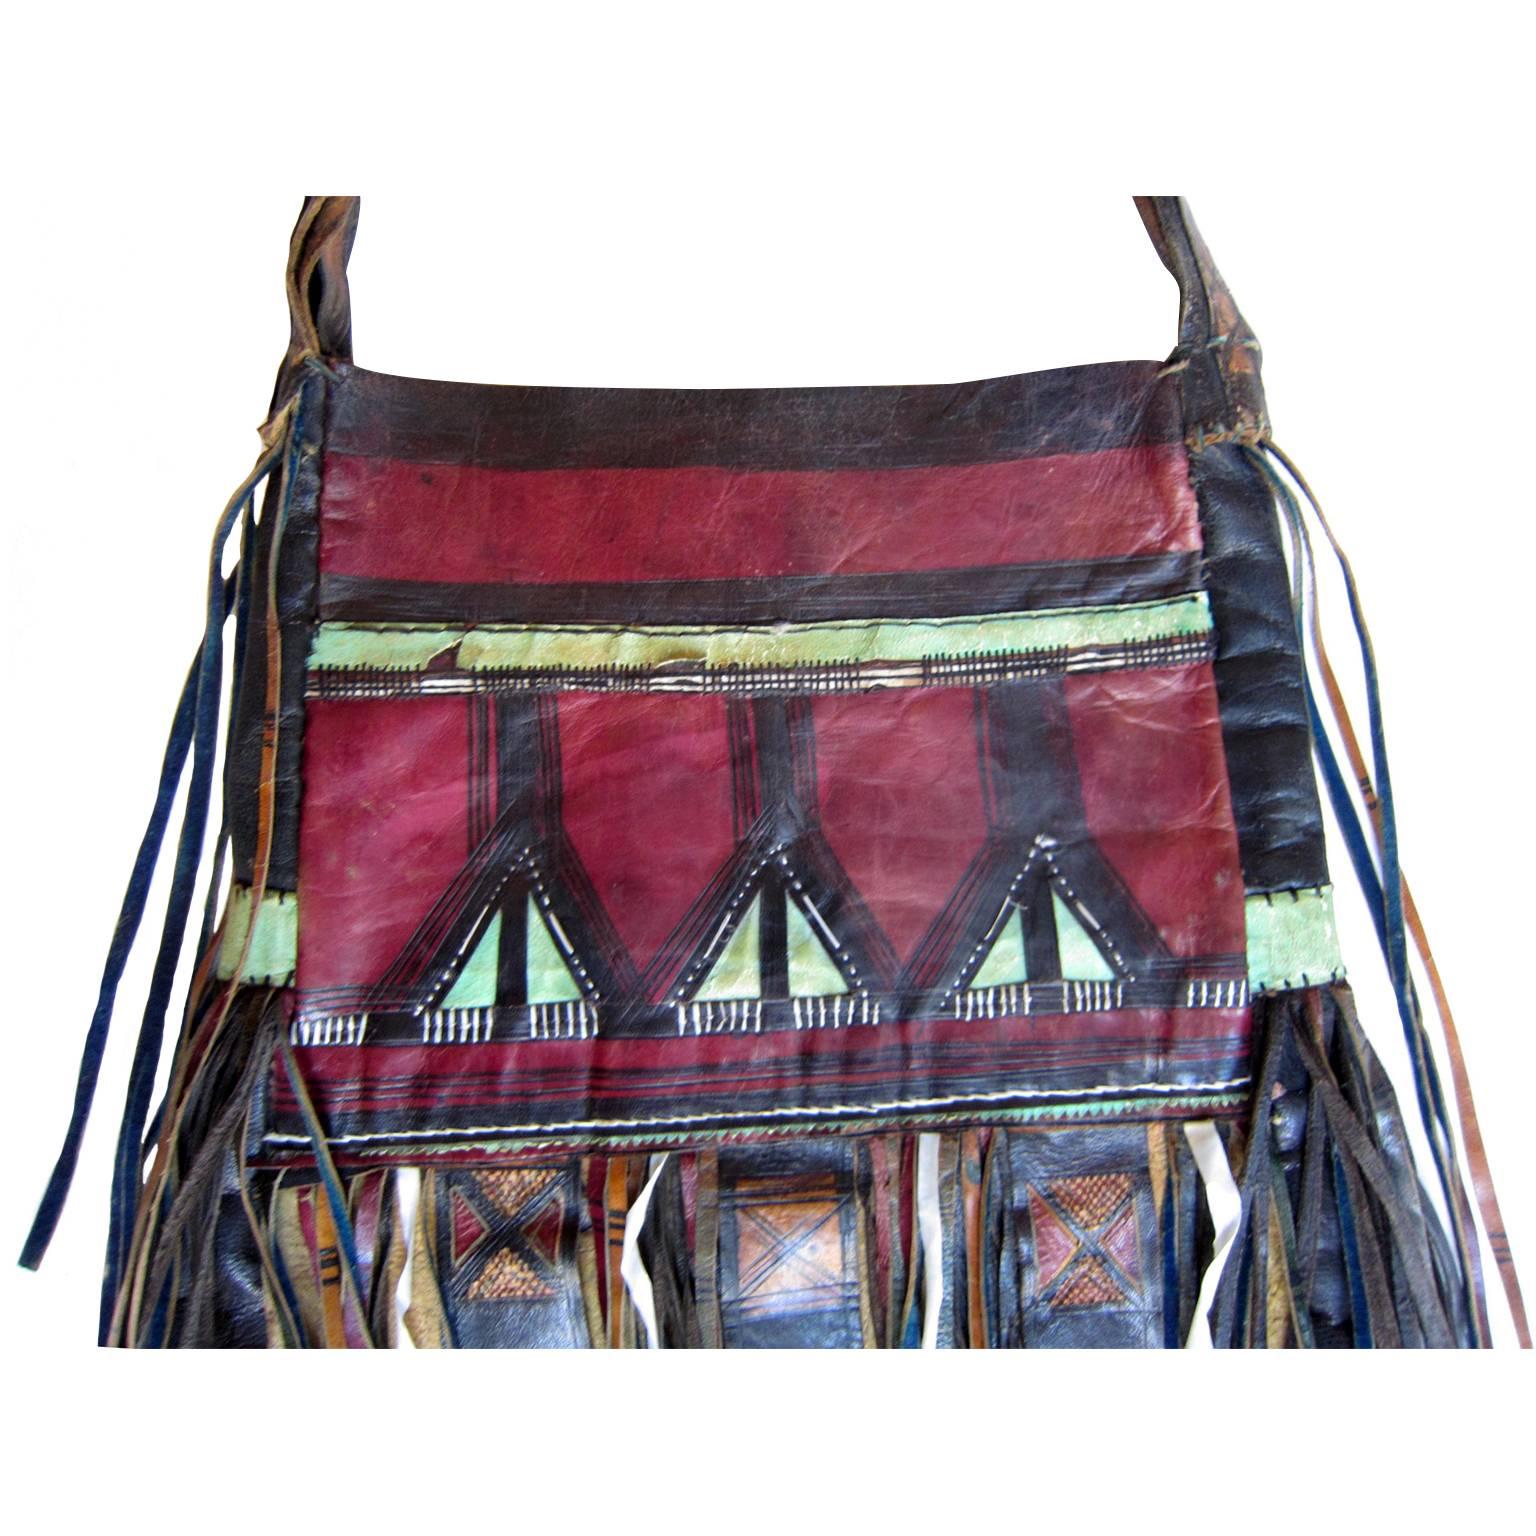 tuareg leather bags